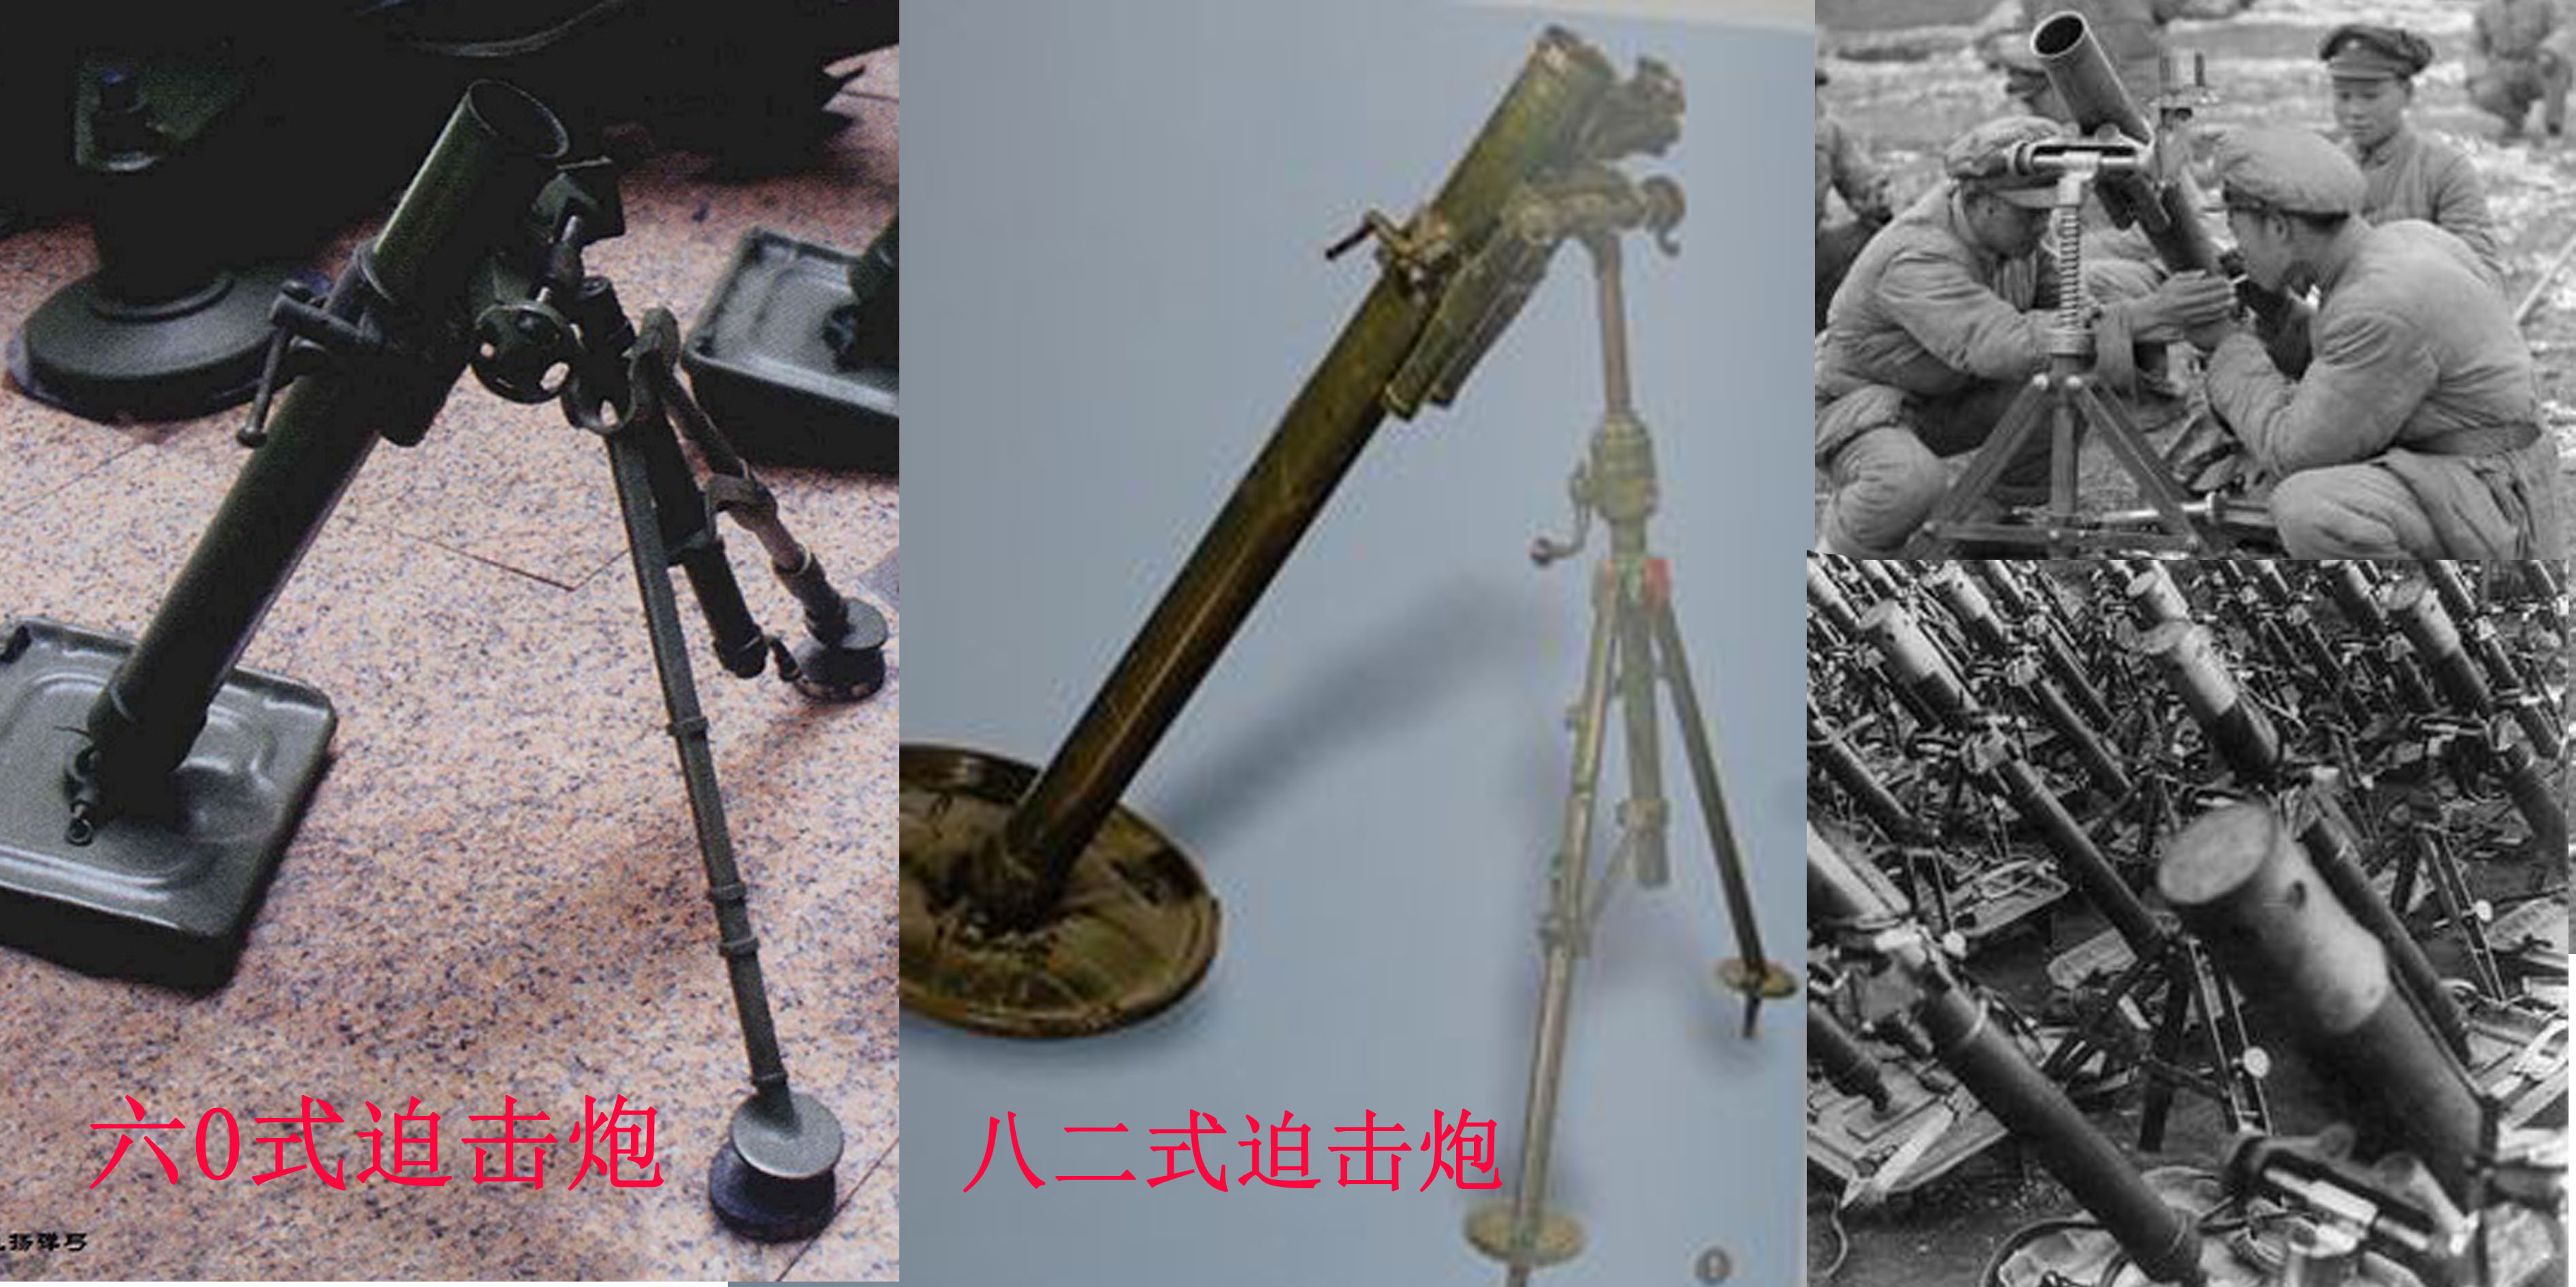 18年战争出现在我国的装备之火炮,迫击炮,手雷